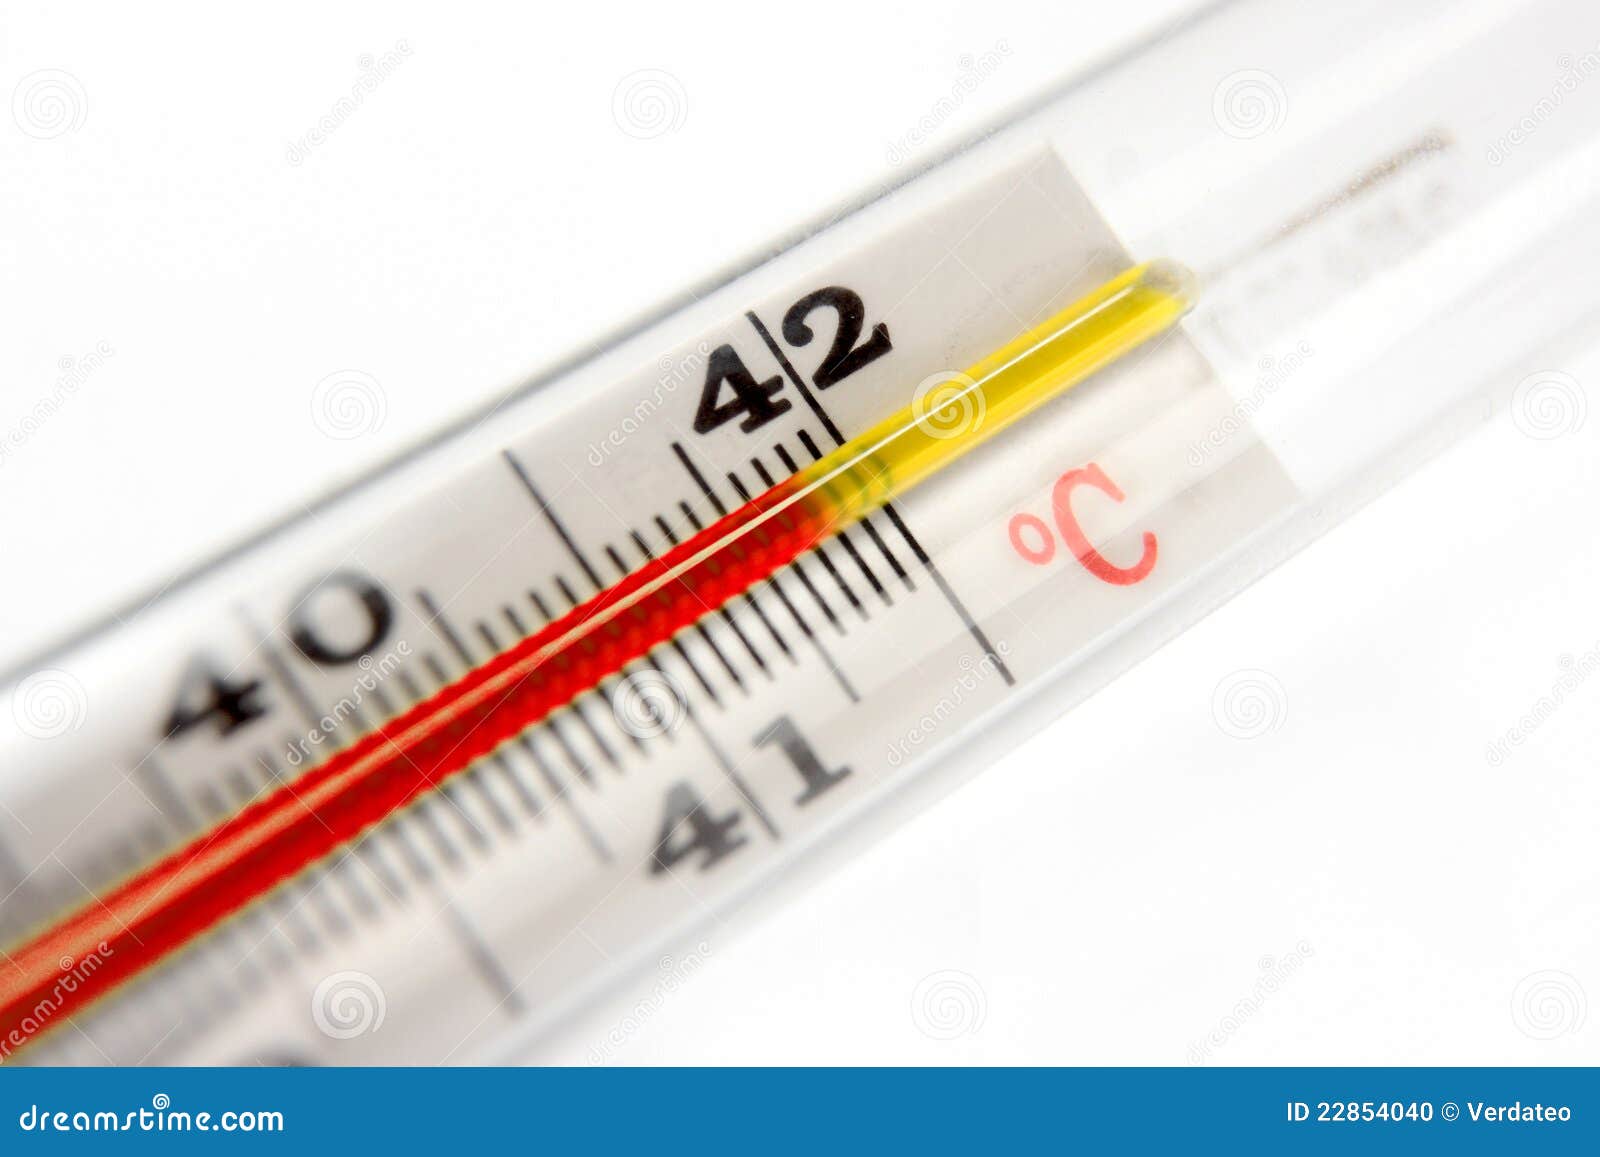 Slot Bedelen Geurig Thermometer Die 42 Graden Toont Stock Foto - Image of geneeskunde, sluit:  22854040